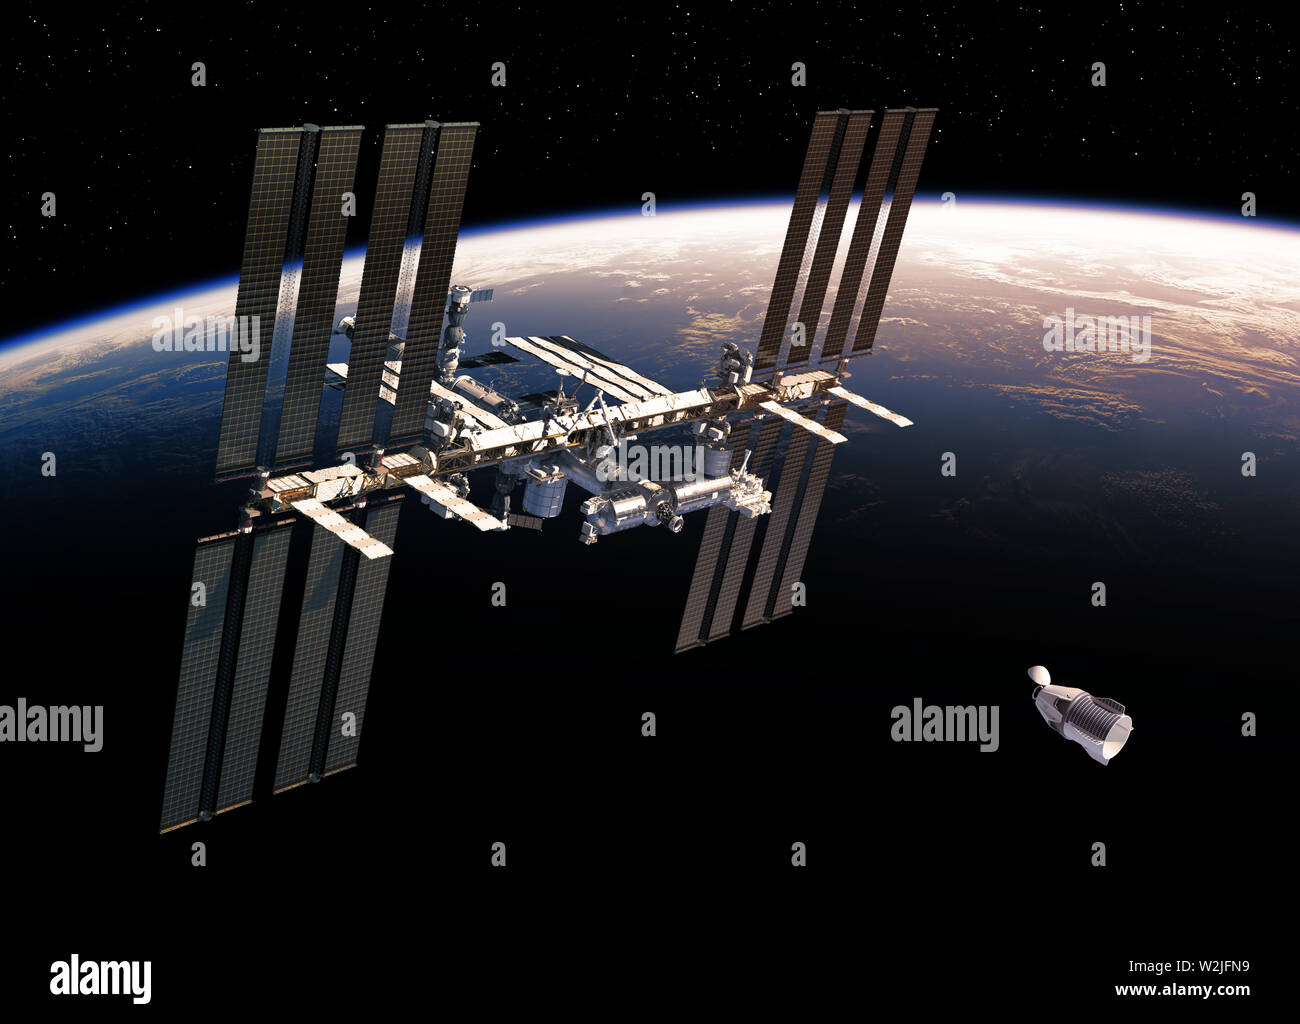 Comercial Internacional de naves espaciales y estaciones espaciales en órbita alrededor de la tierra. Ilustración 3D. Foto de stock